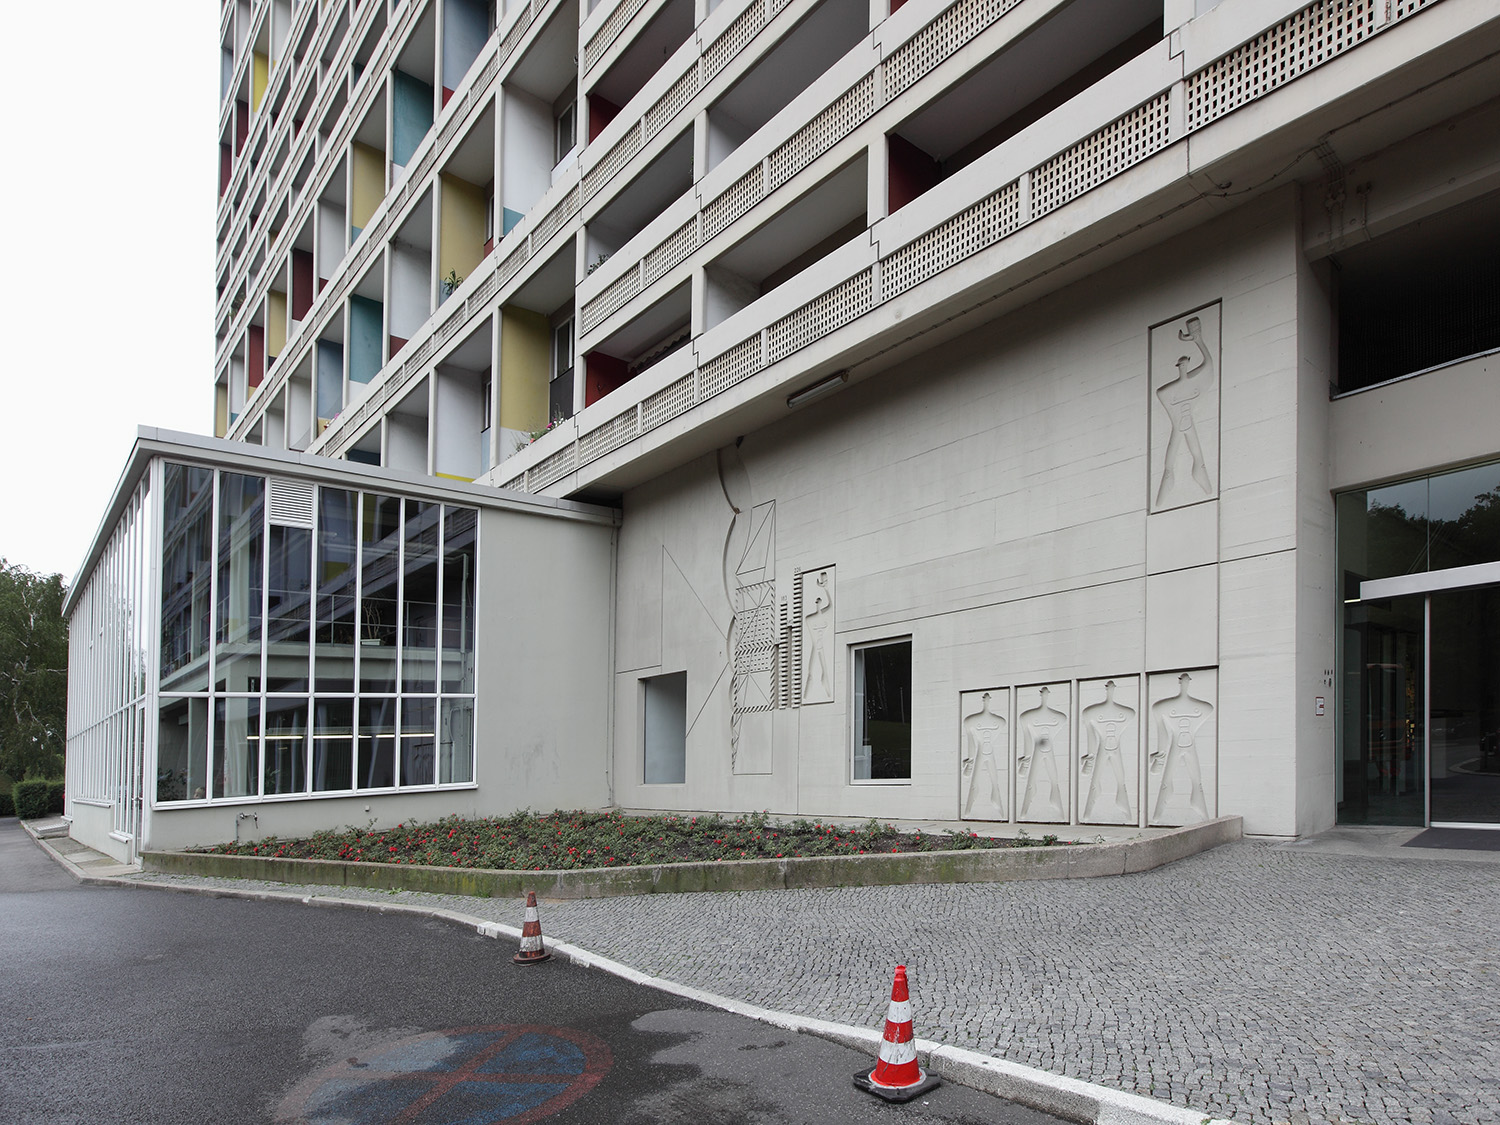 Unité d'habitation
Le Corbusier, 1957
Berlin